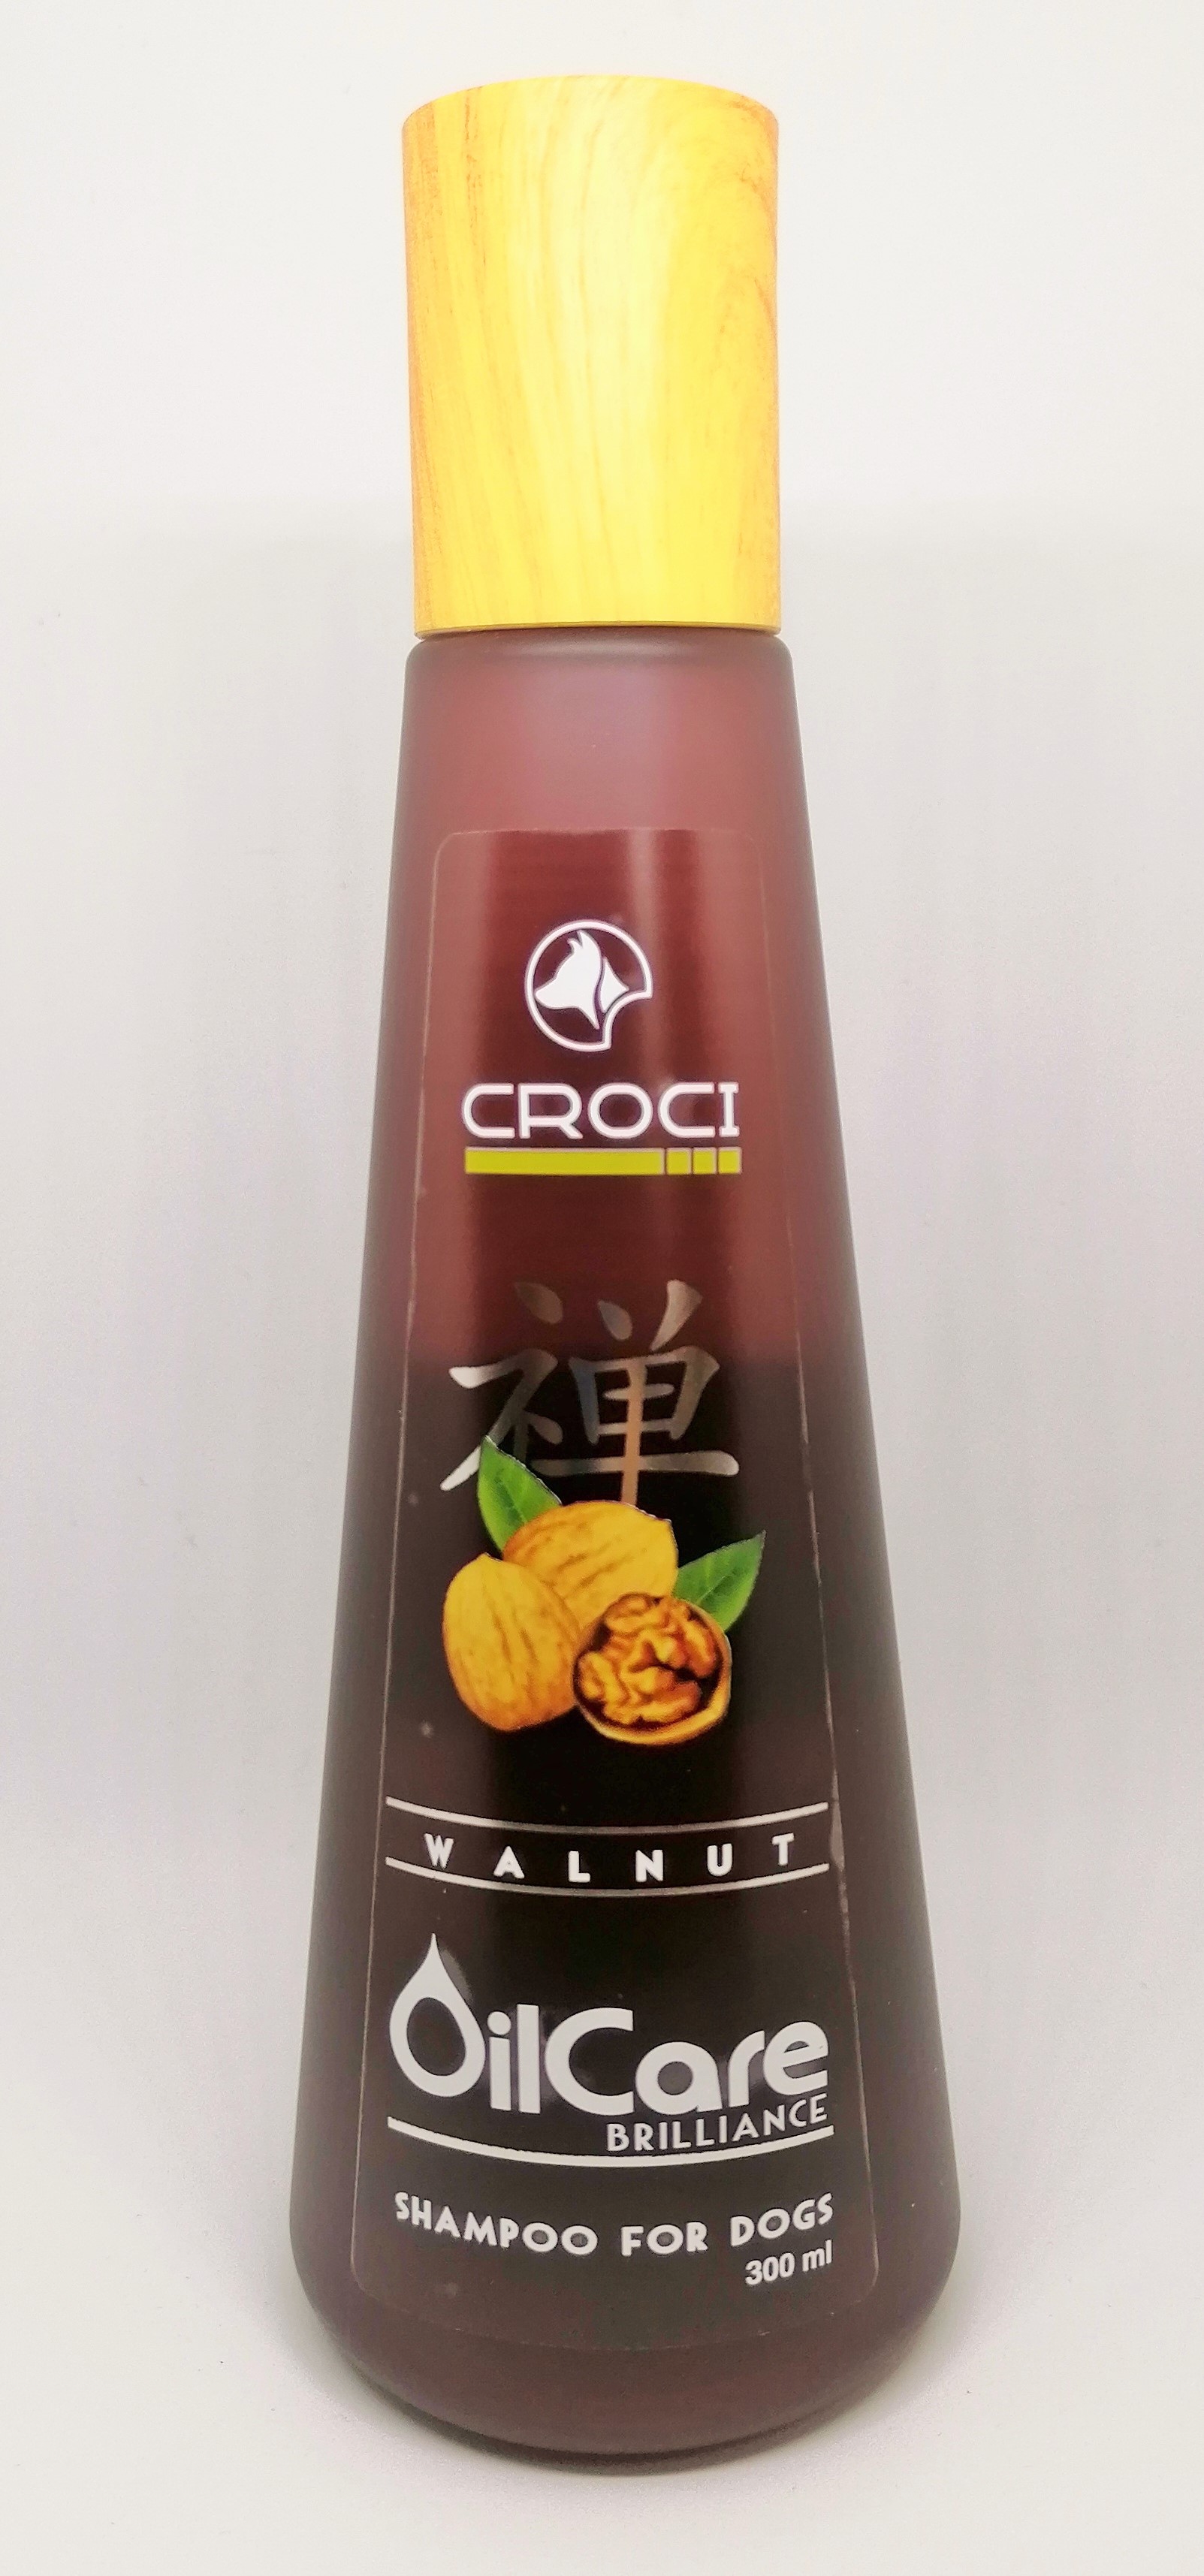 GILL'S OilCare Brilliance šampūnas su graikiškais riešutais 300ml (3)